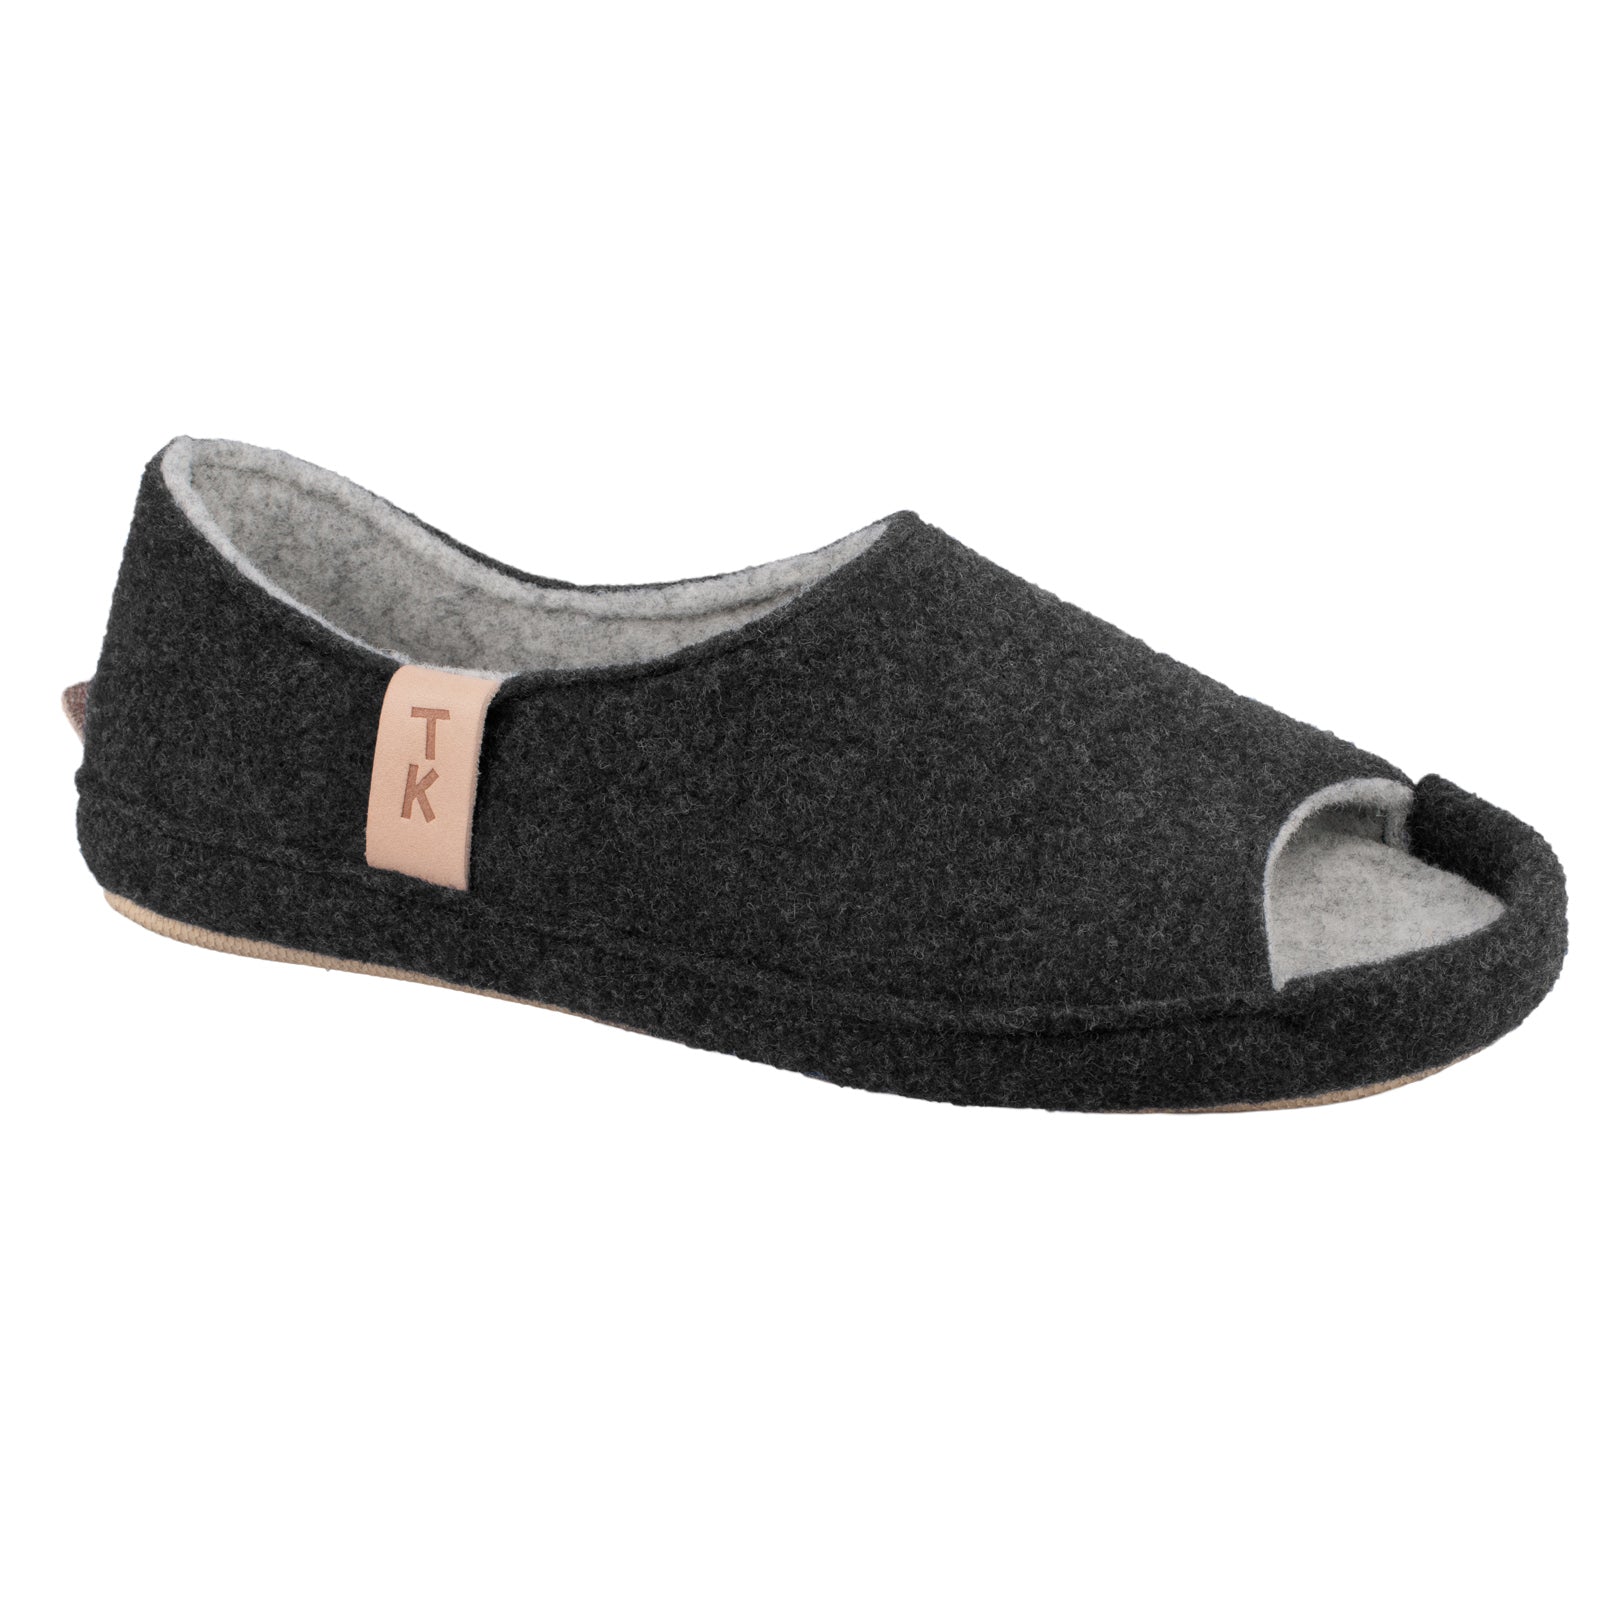 Unisex woolen slippers Bern